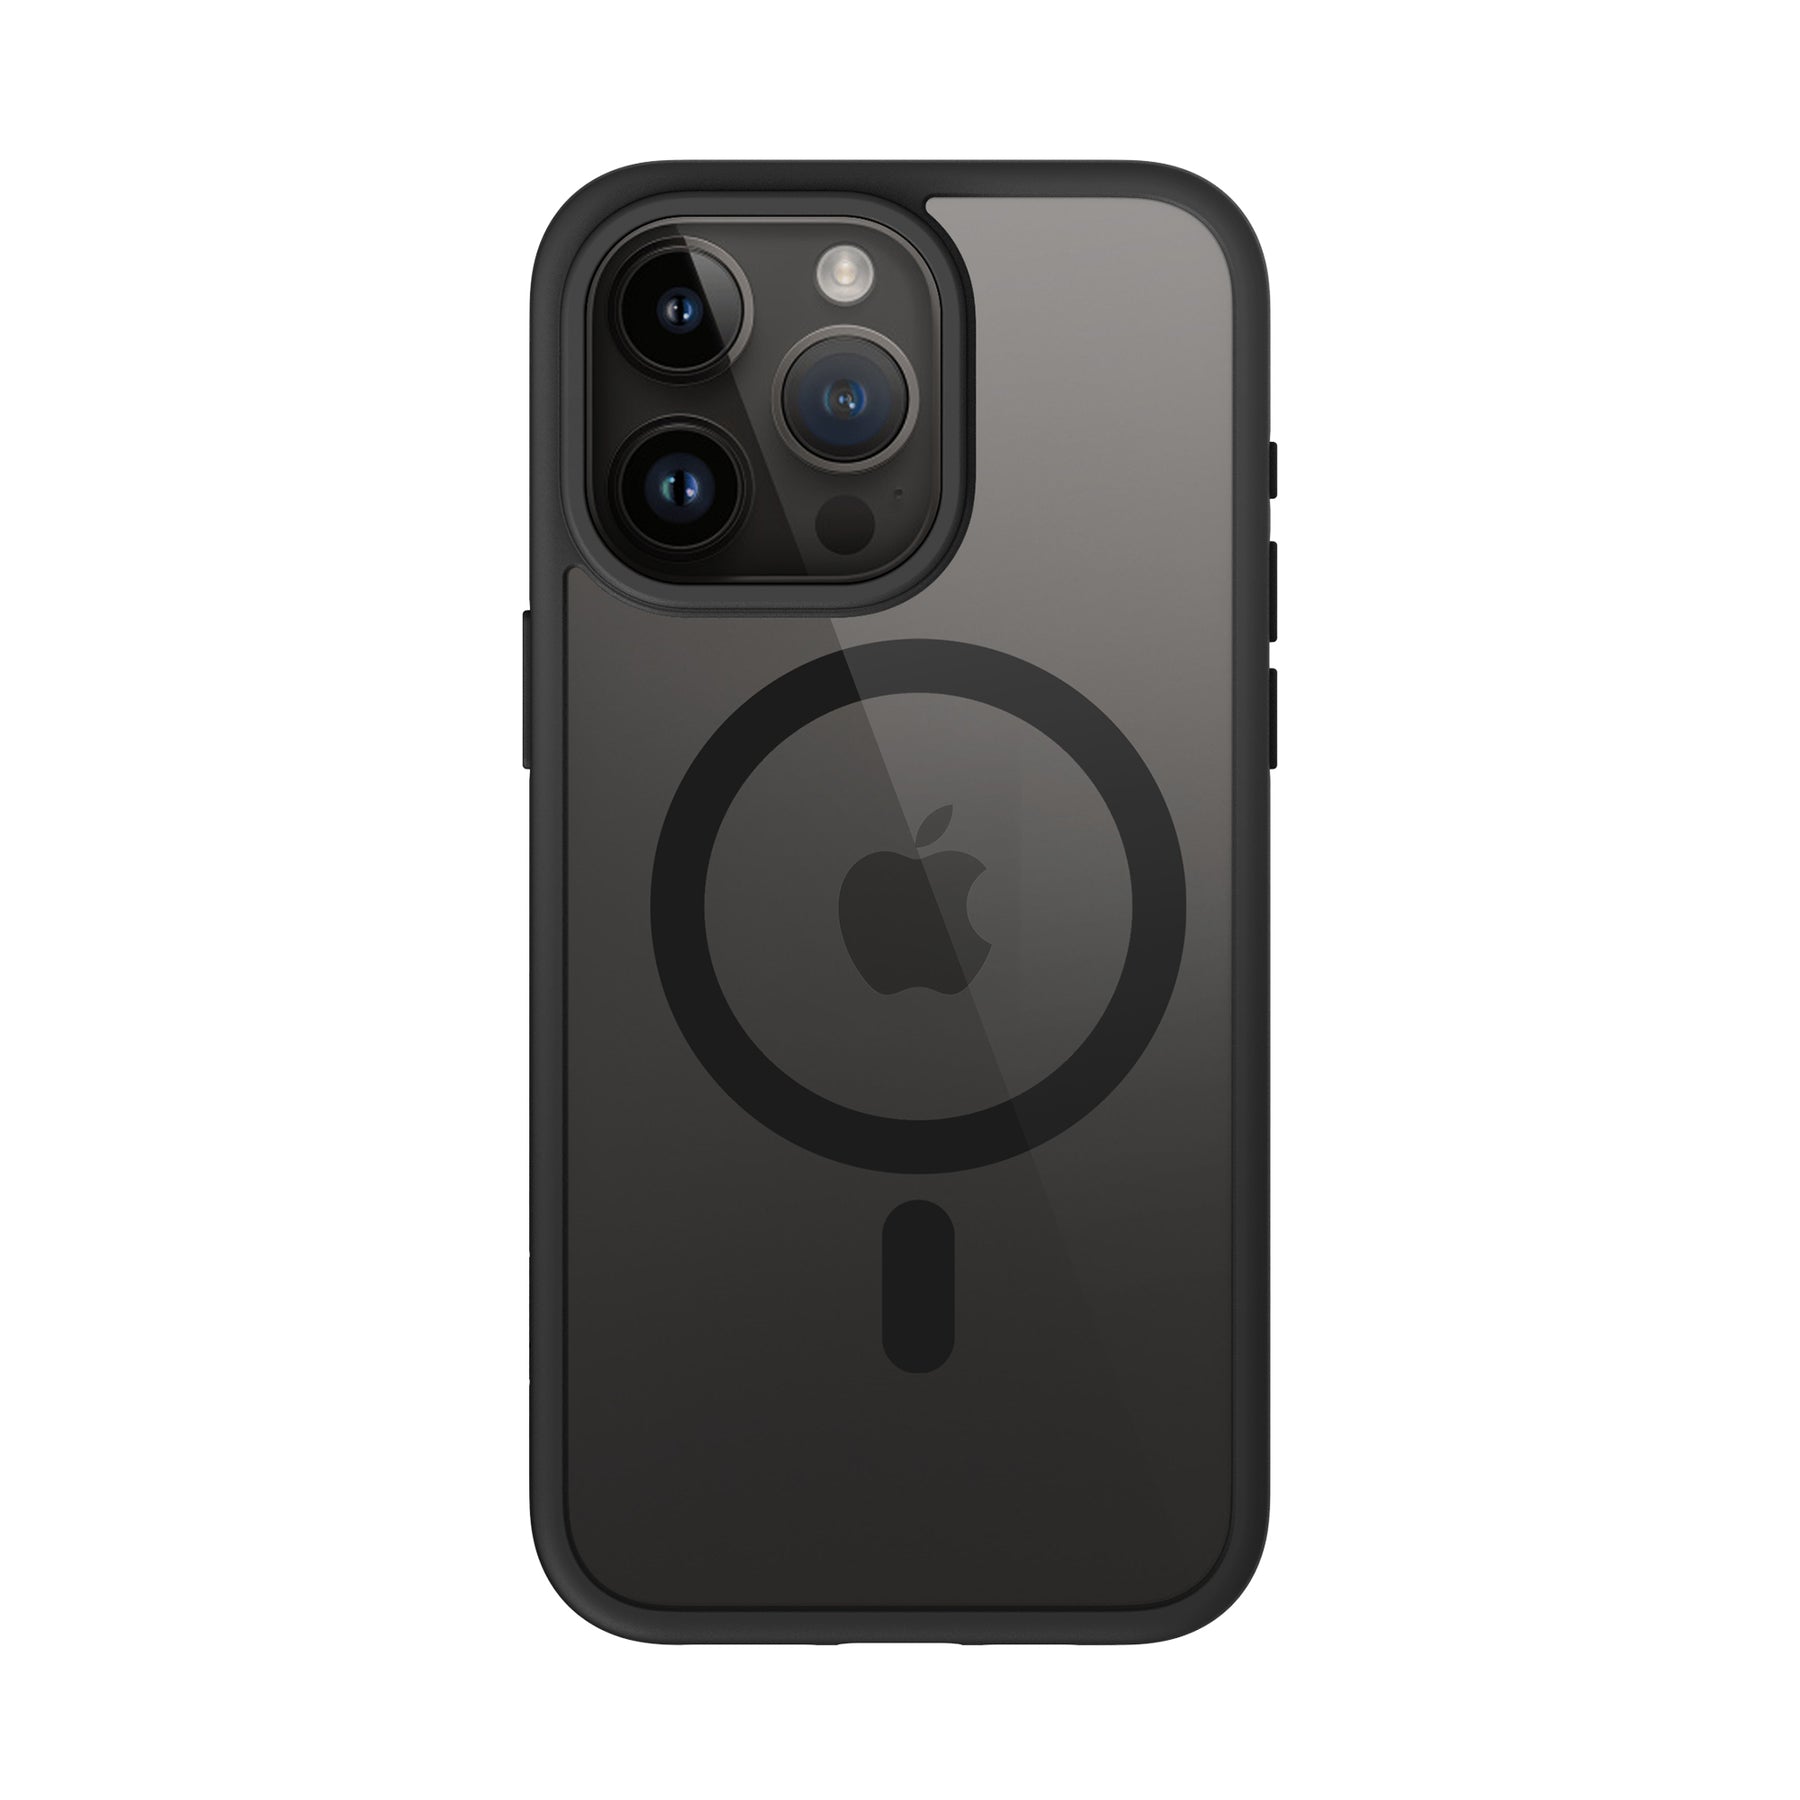 Capa Silicone Anti-Choque Apple Iphone 12 Mini Transparente